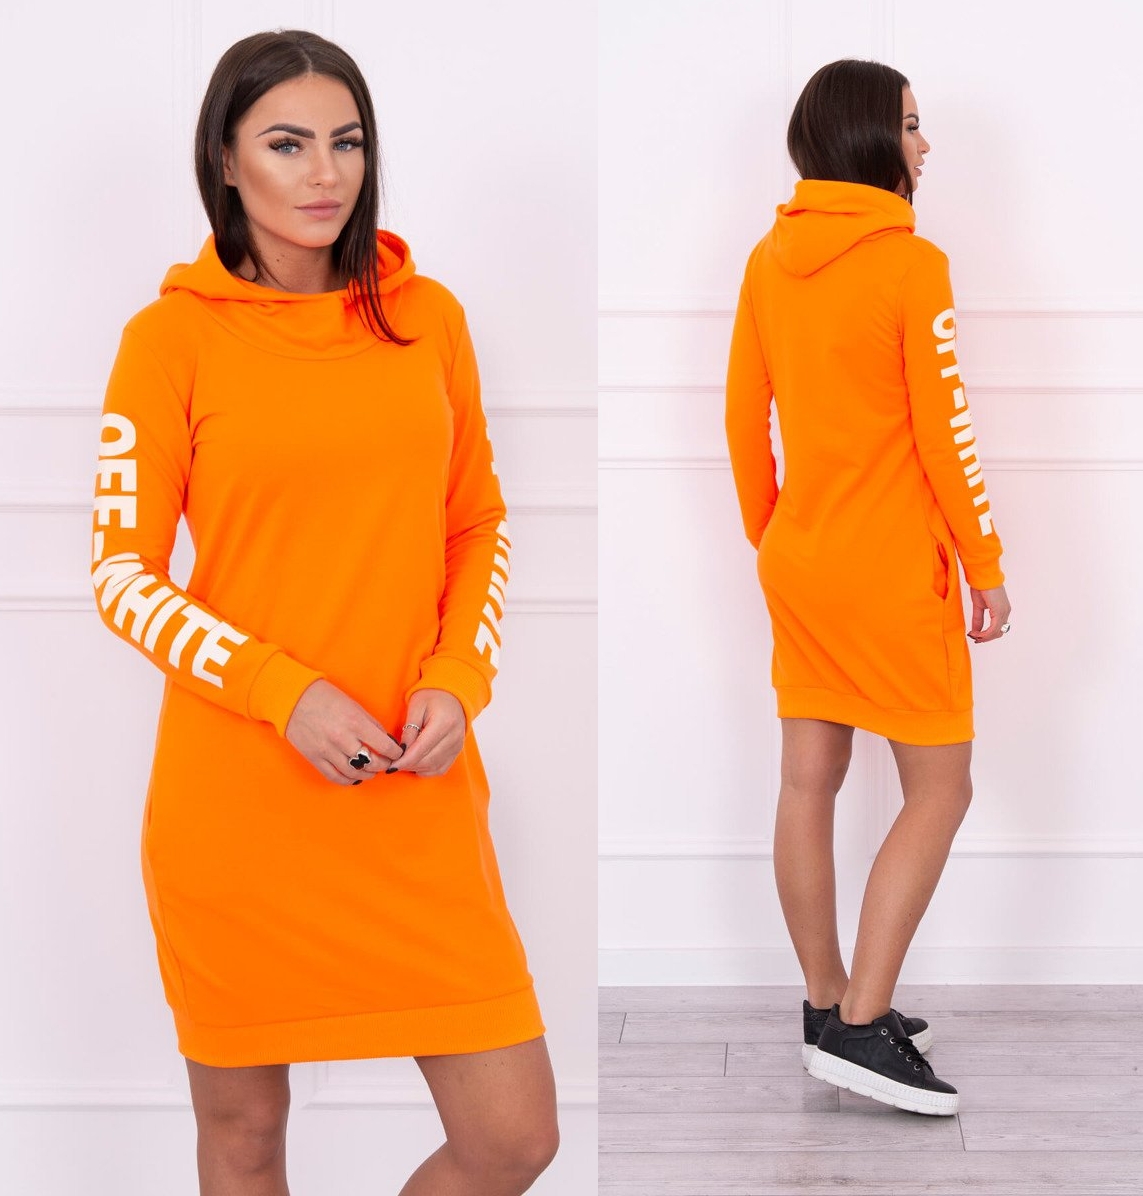 Sportovní šaty s kapucí Anna neonově oranžové Velikost: Univerzální